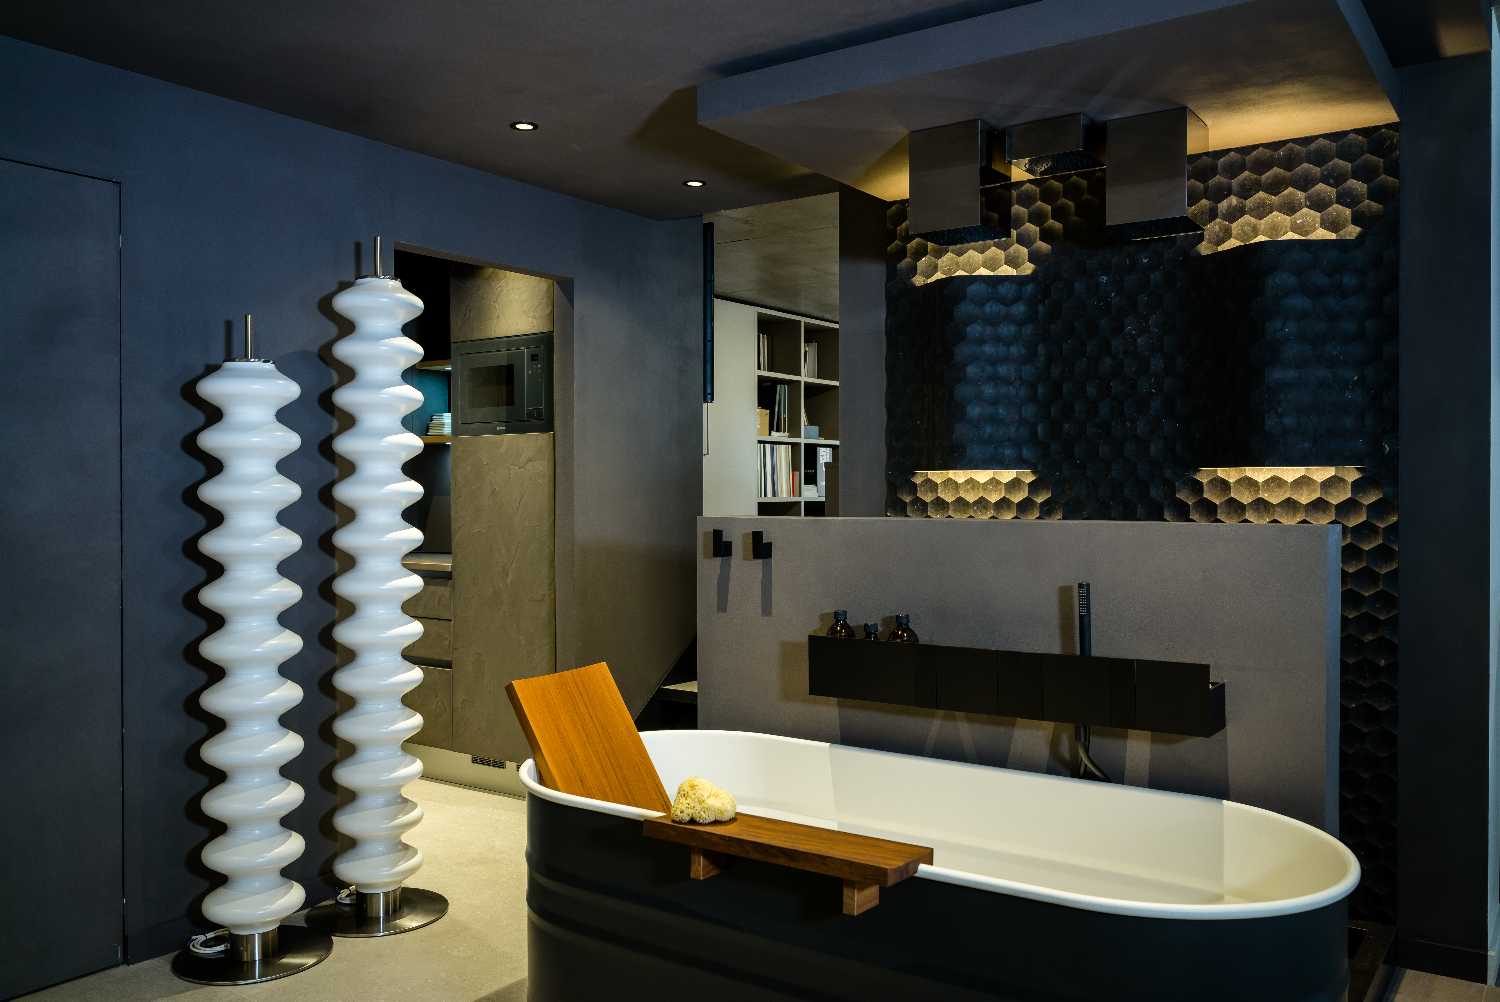 salle de bain haut de gamme St-Tropez Var Alpes Maritimes Monaco